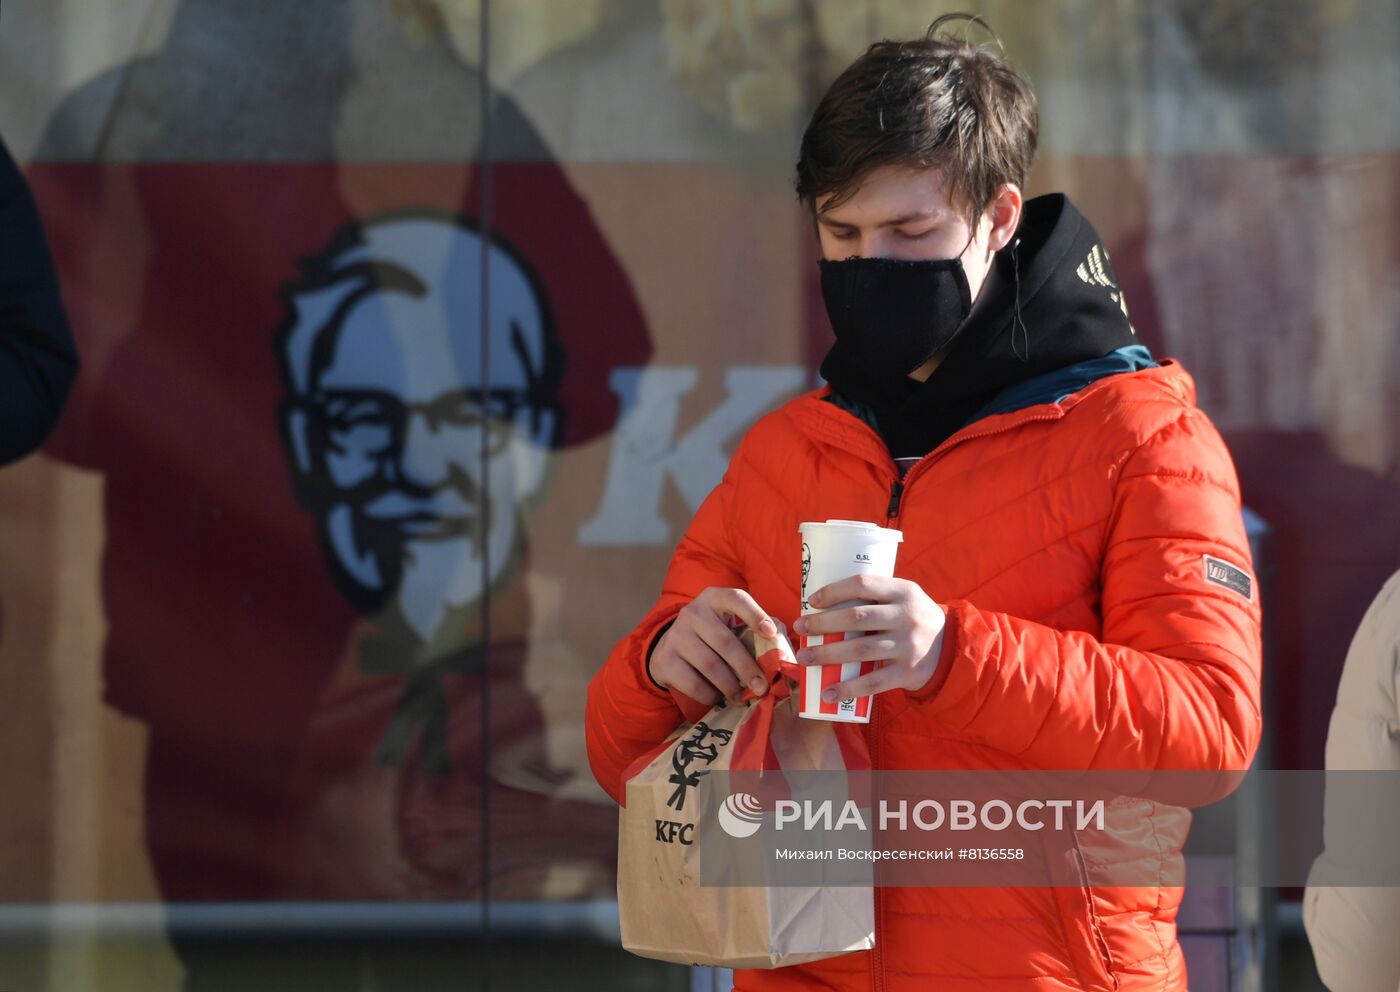 Рестораны KFC приостанавливают деятельность в России